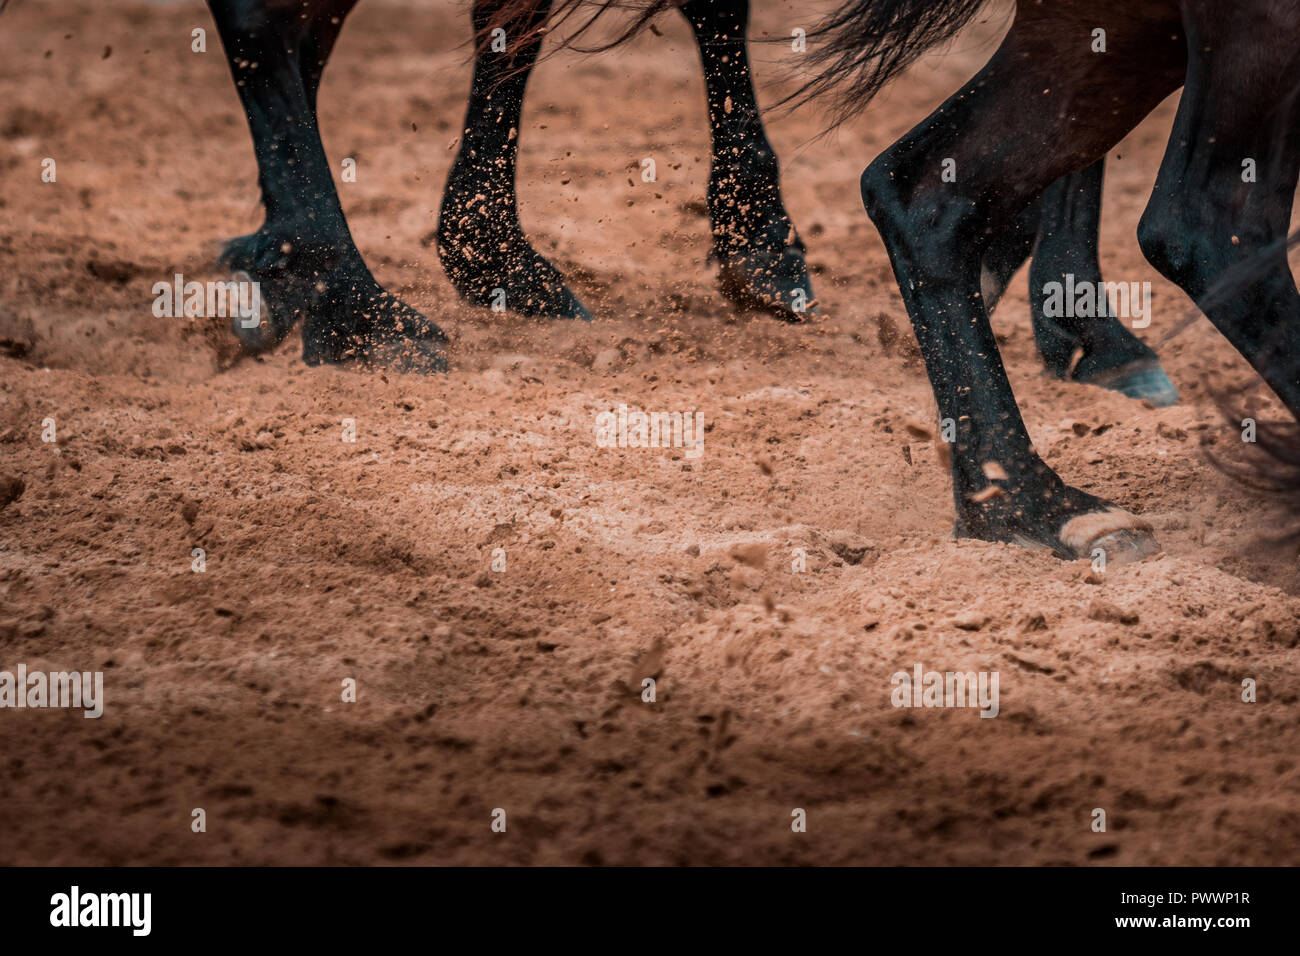 Wilde Pferde wild galoppierenden in einem Rodeo zeigen. Details und auf Füße, Sand, Staub, Schmutz und Bewegungsunschärfe konzentrieren. Verschwommenes Bild Hintergrund, warmer Beleuchtung, sh Stockfoto